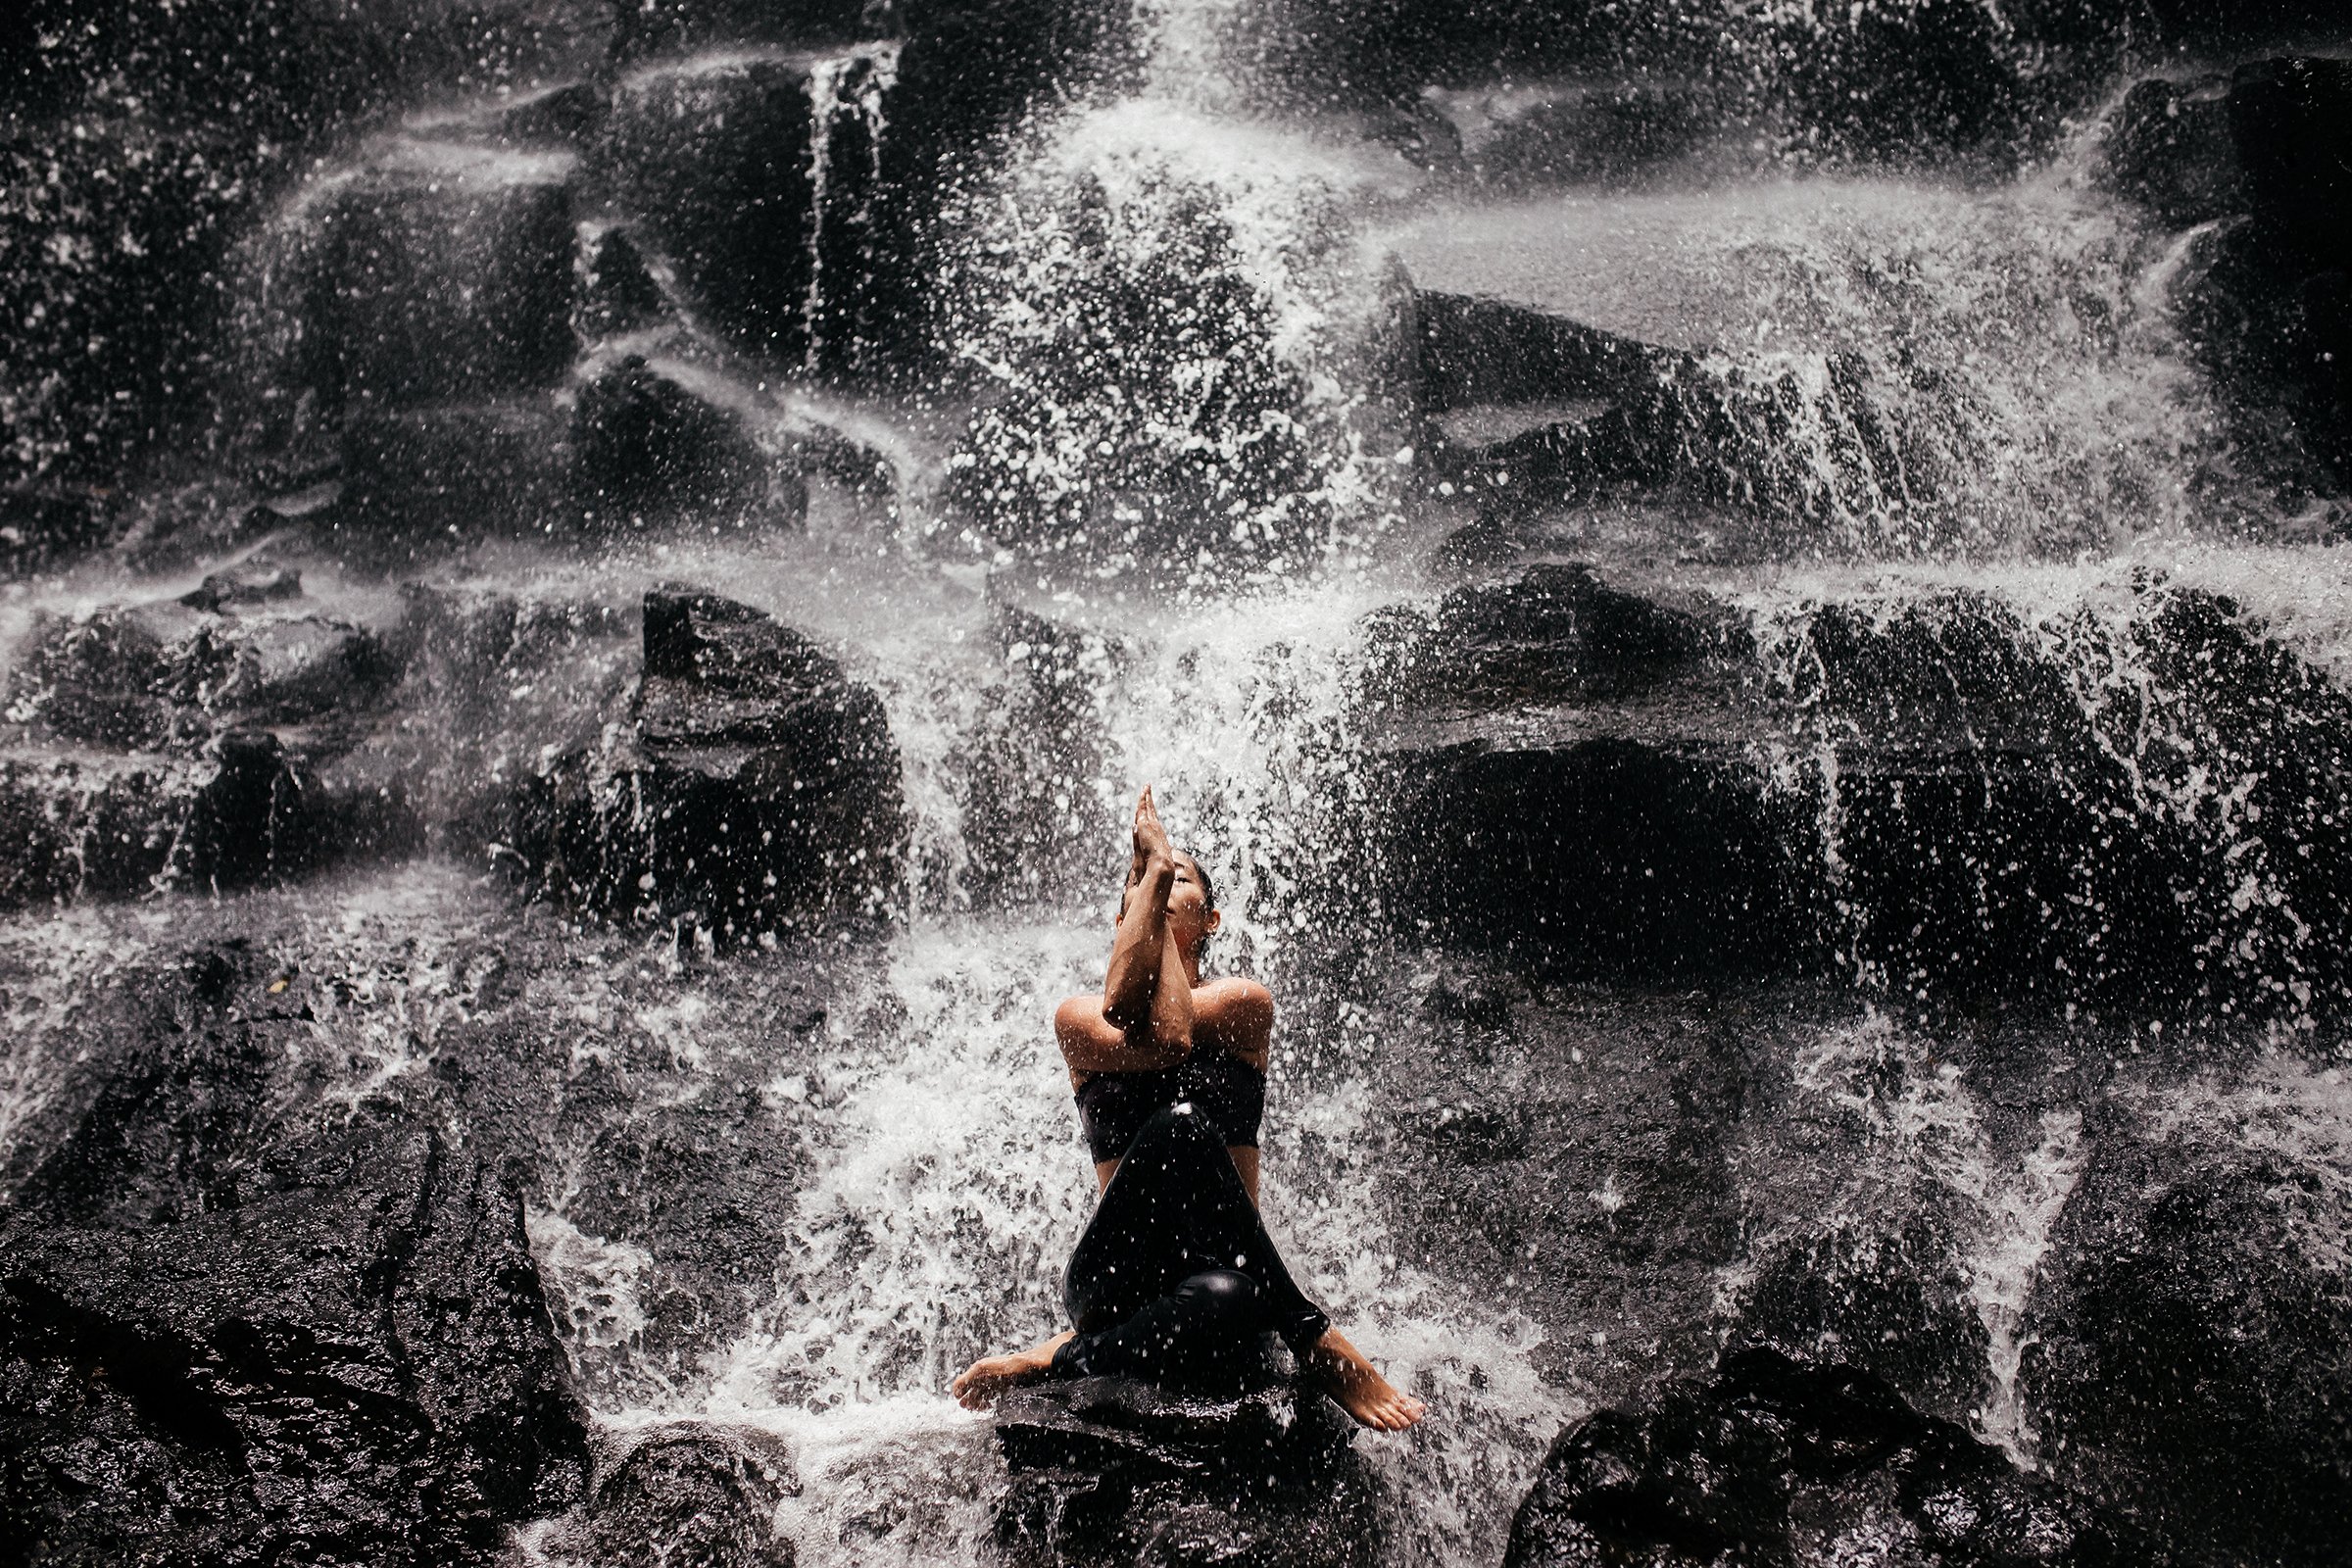 йога водопад бали джунгли yoga waterfall jungle Bali Ubud, Роман Дегтярев